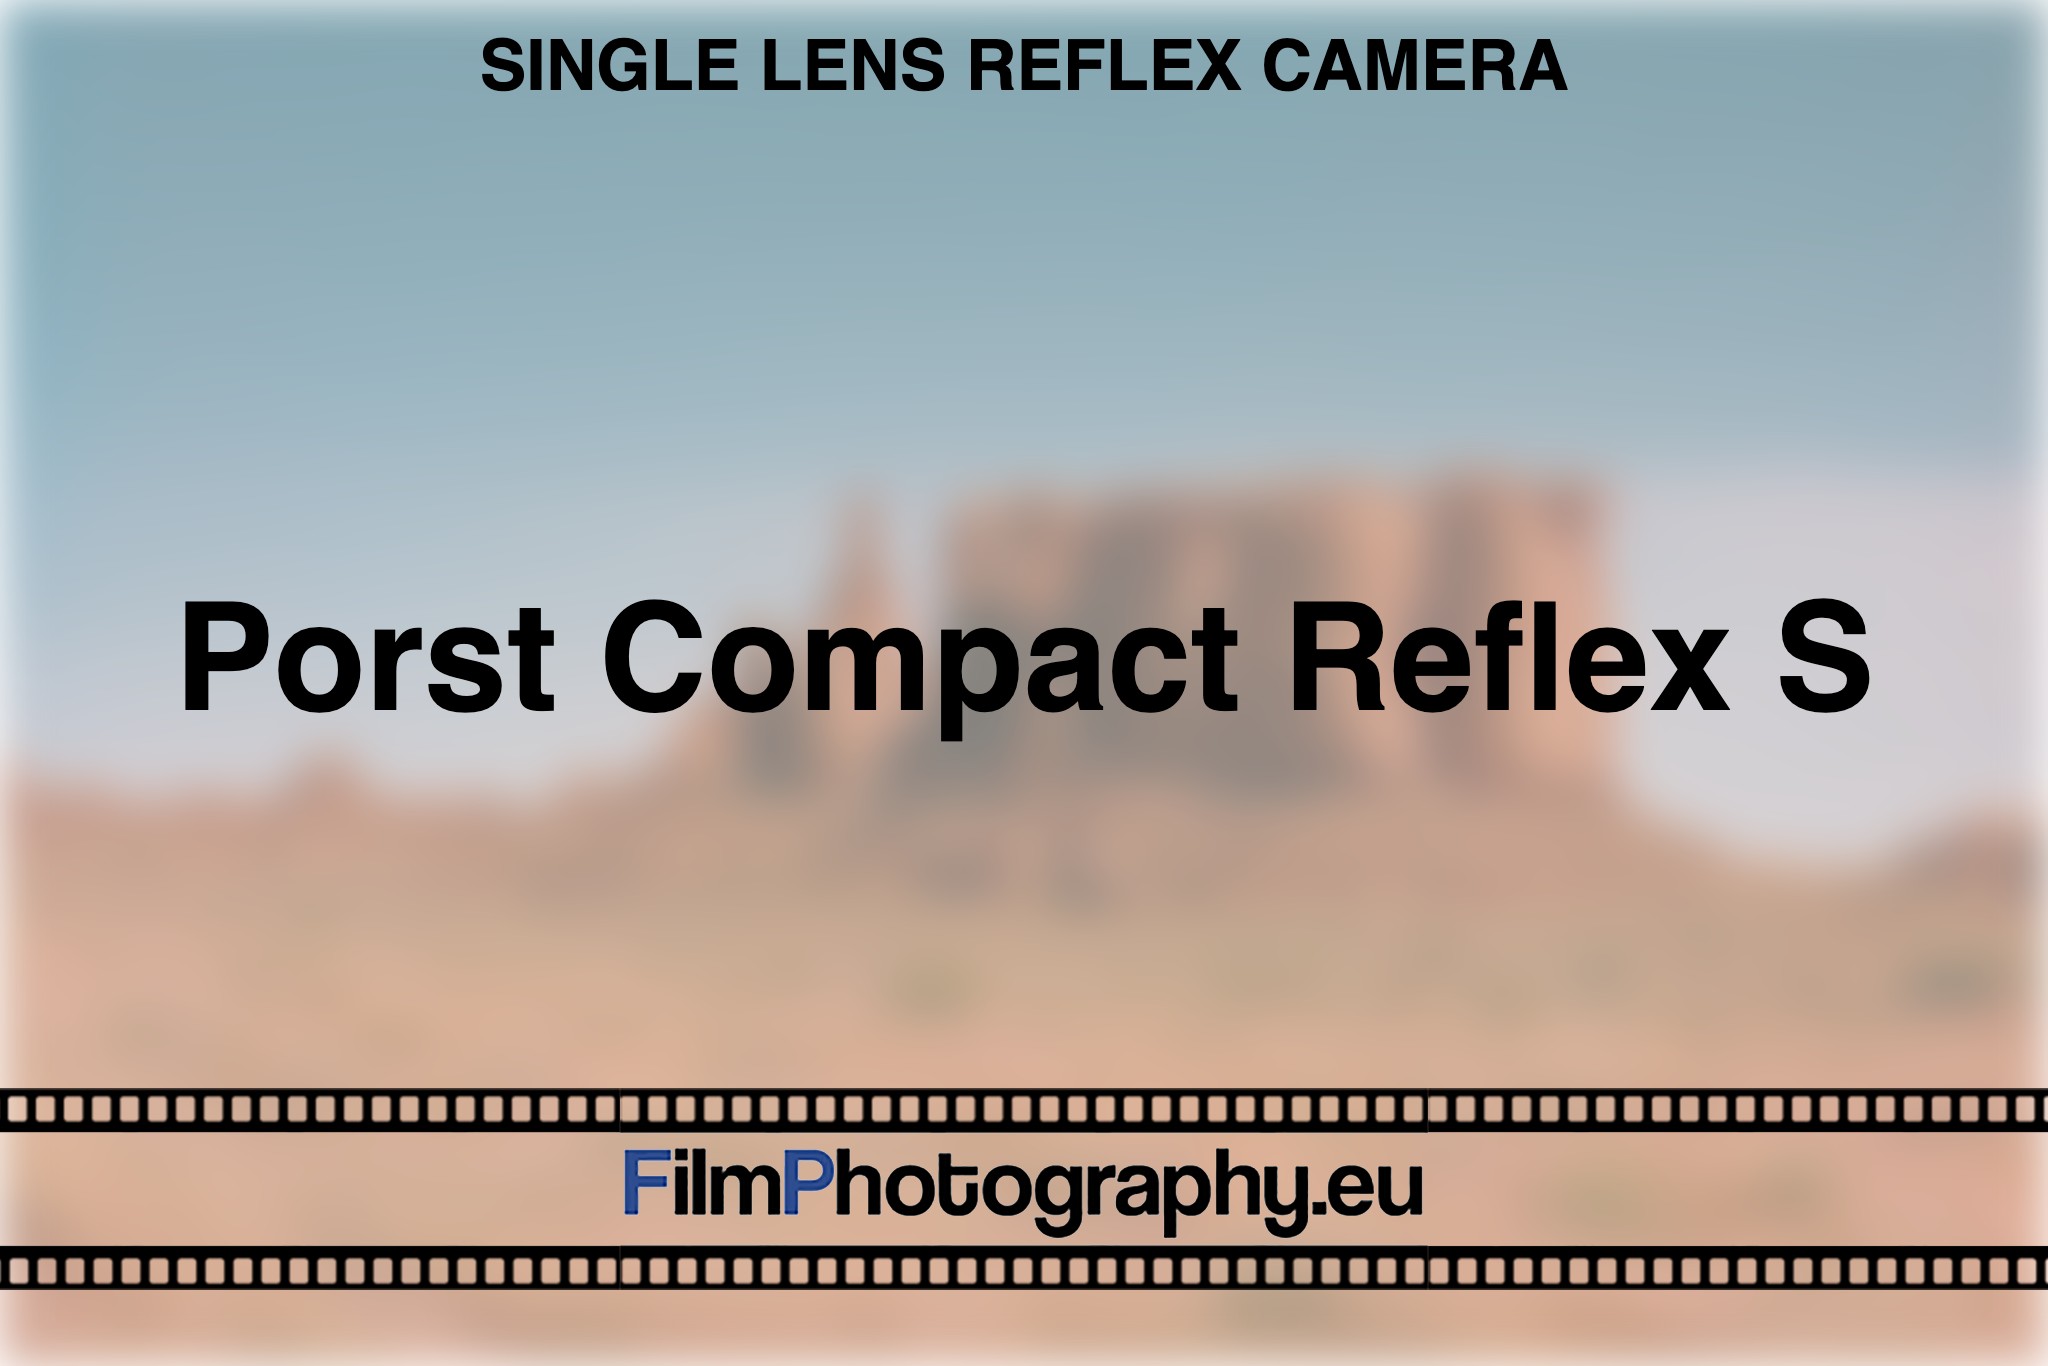 porst-compact-reflex-s-single-lens-reflex-camera-bnv